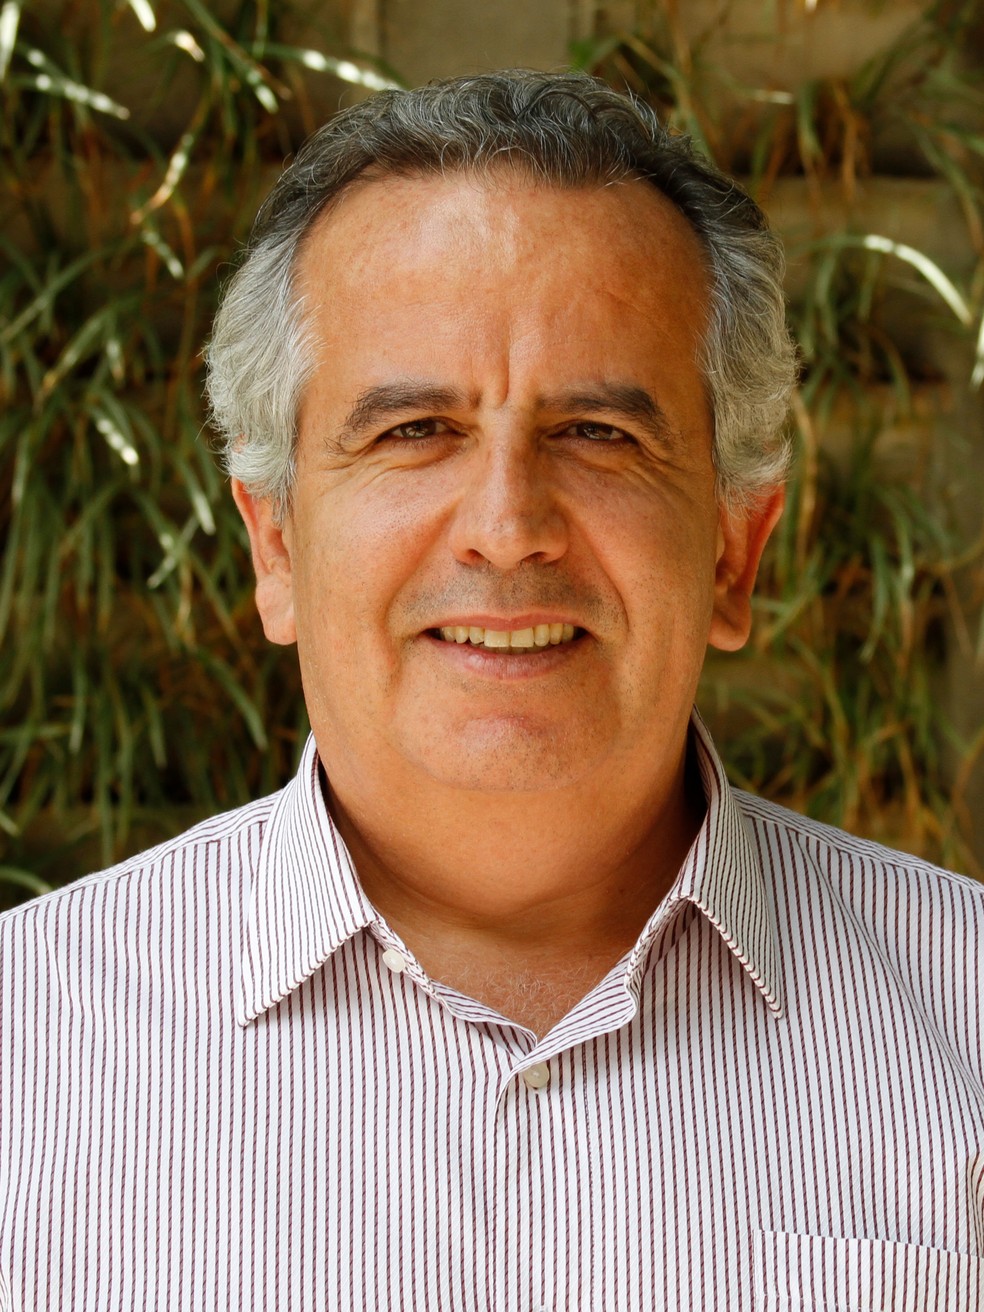 Mario Monzoni é coordenador geral do Centro de Estudos em Sustentabilidade da Escola de Administração de Empresas de São Paulo da Fundação Getulio Vargas (FGV EAESP) — Foto: Divulgação